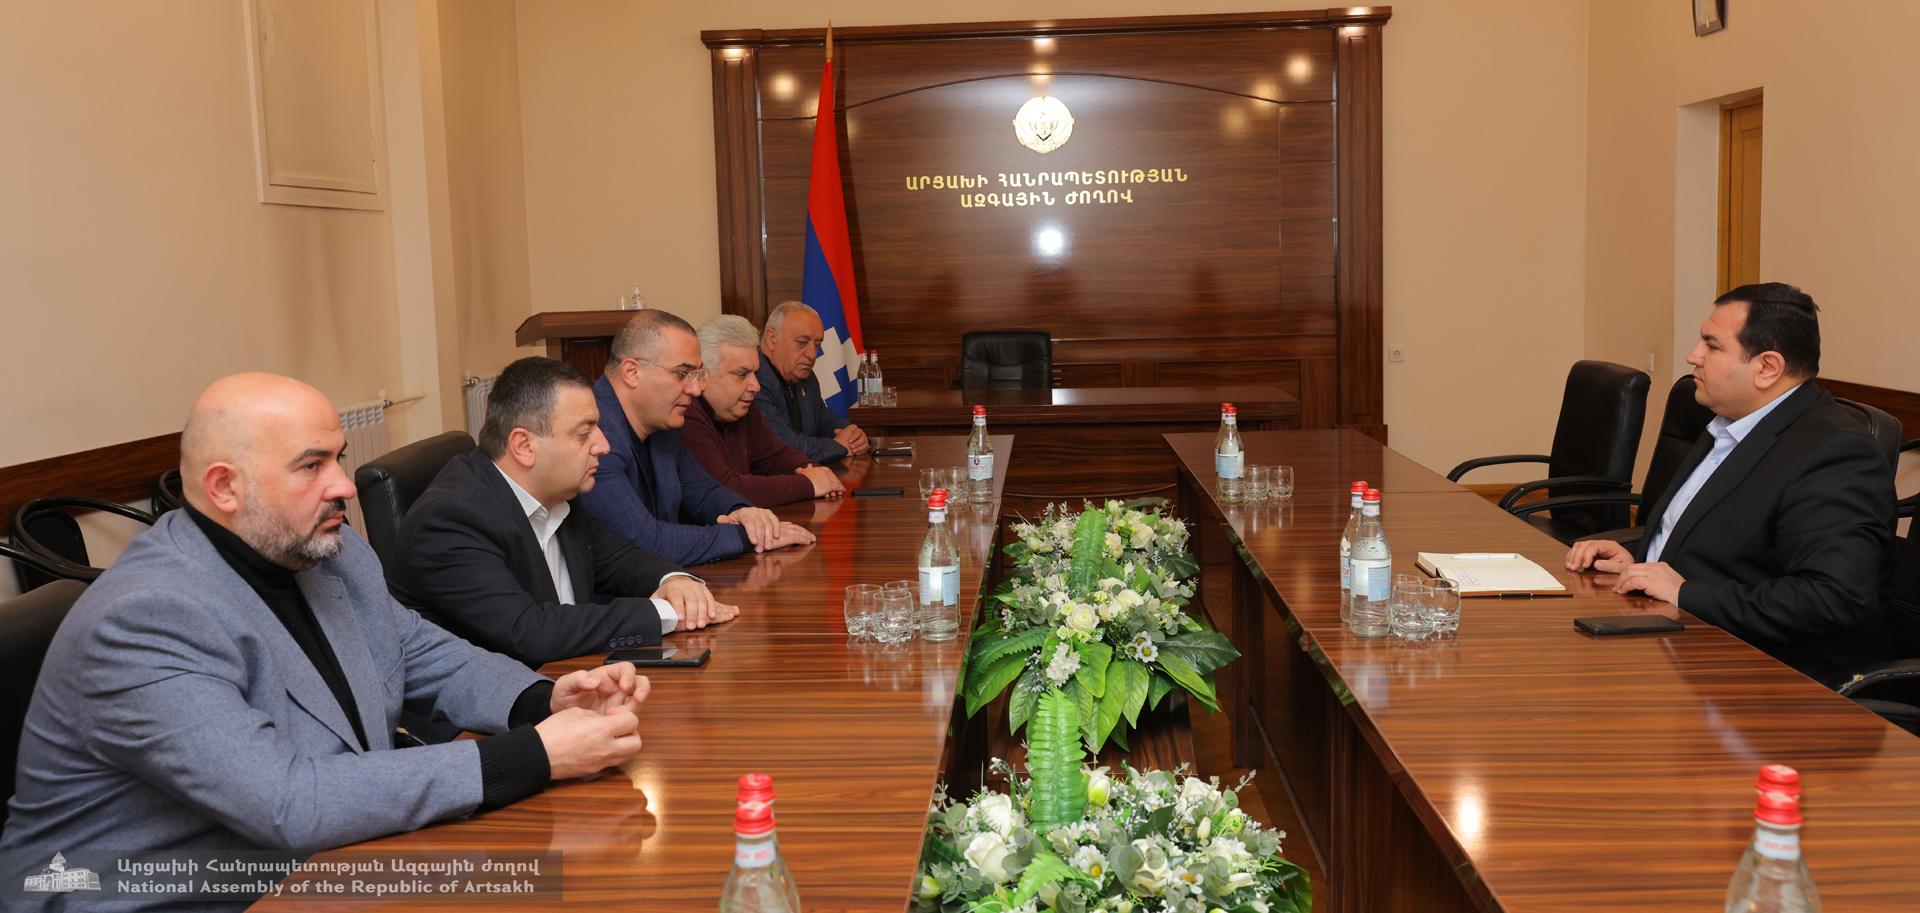 ԱԺ խմբակցությունների ղեկավարները հանդիպել են պետնախարար Գուրգեն Ներսիսյանին